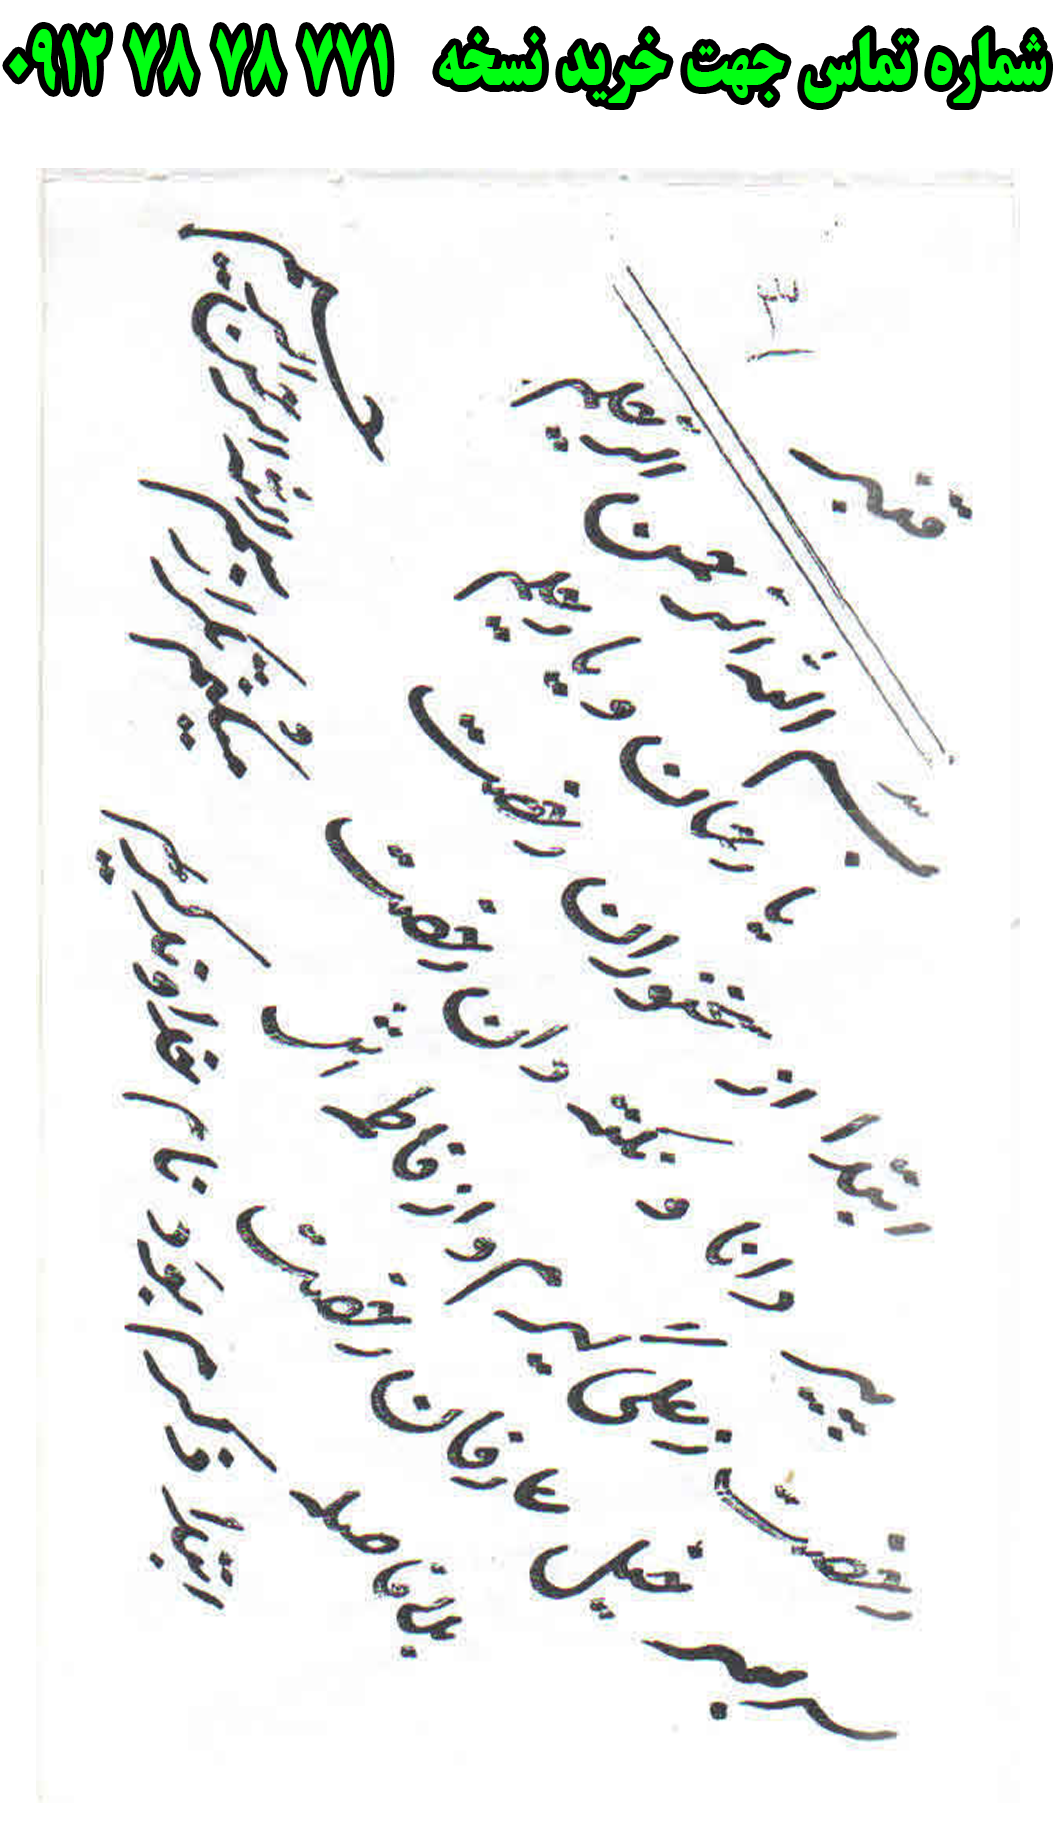 ارسال پستی نسخه تعزیه کامل قنبر در تعزیه امام علی به کل کشور 09127878771